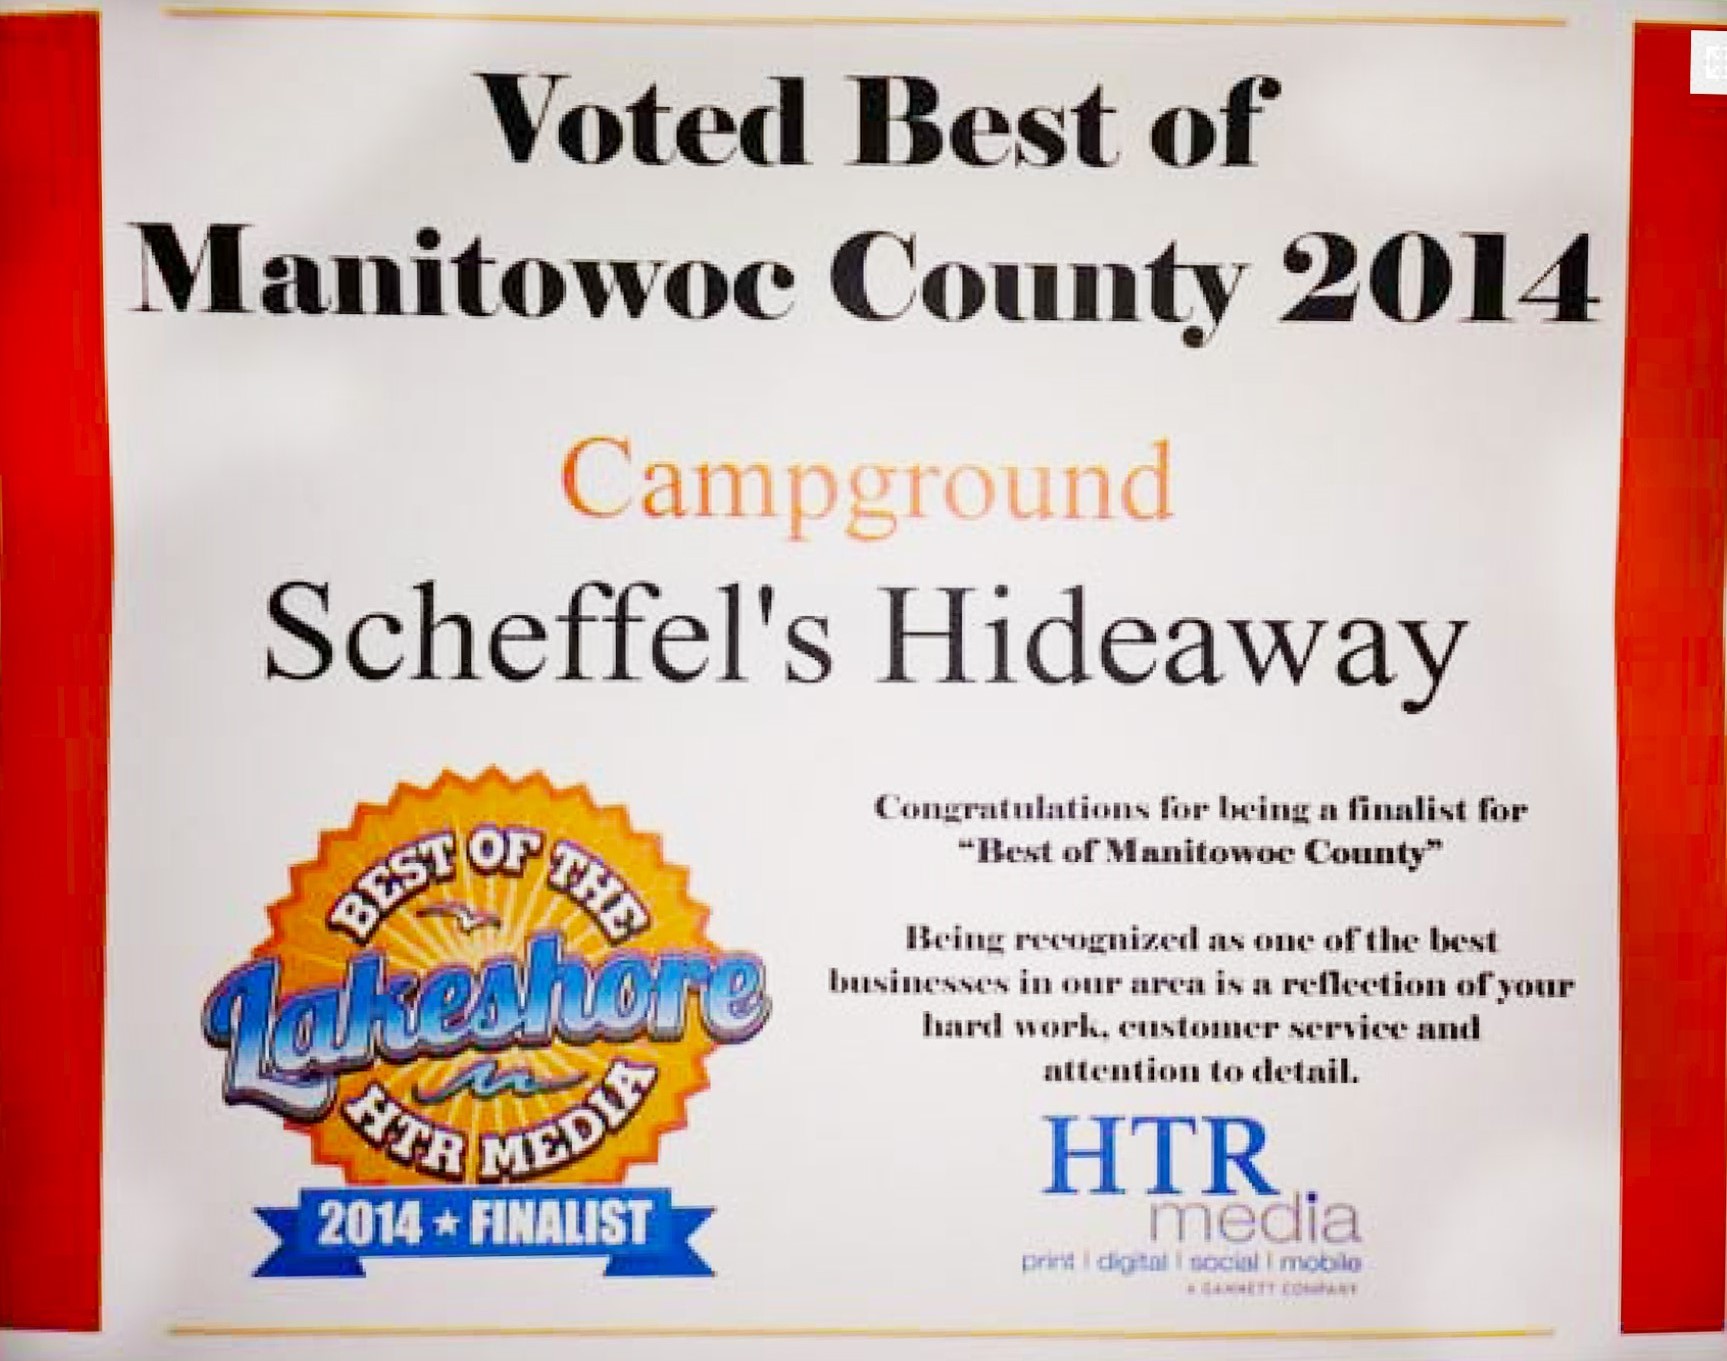 Scheffel’s Hideaway Campground, LLC